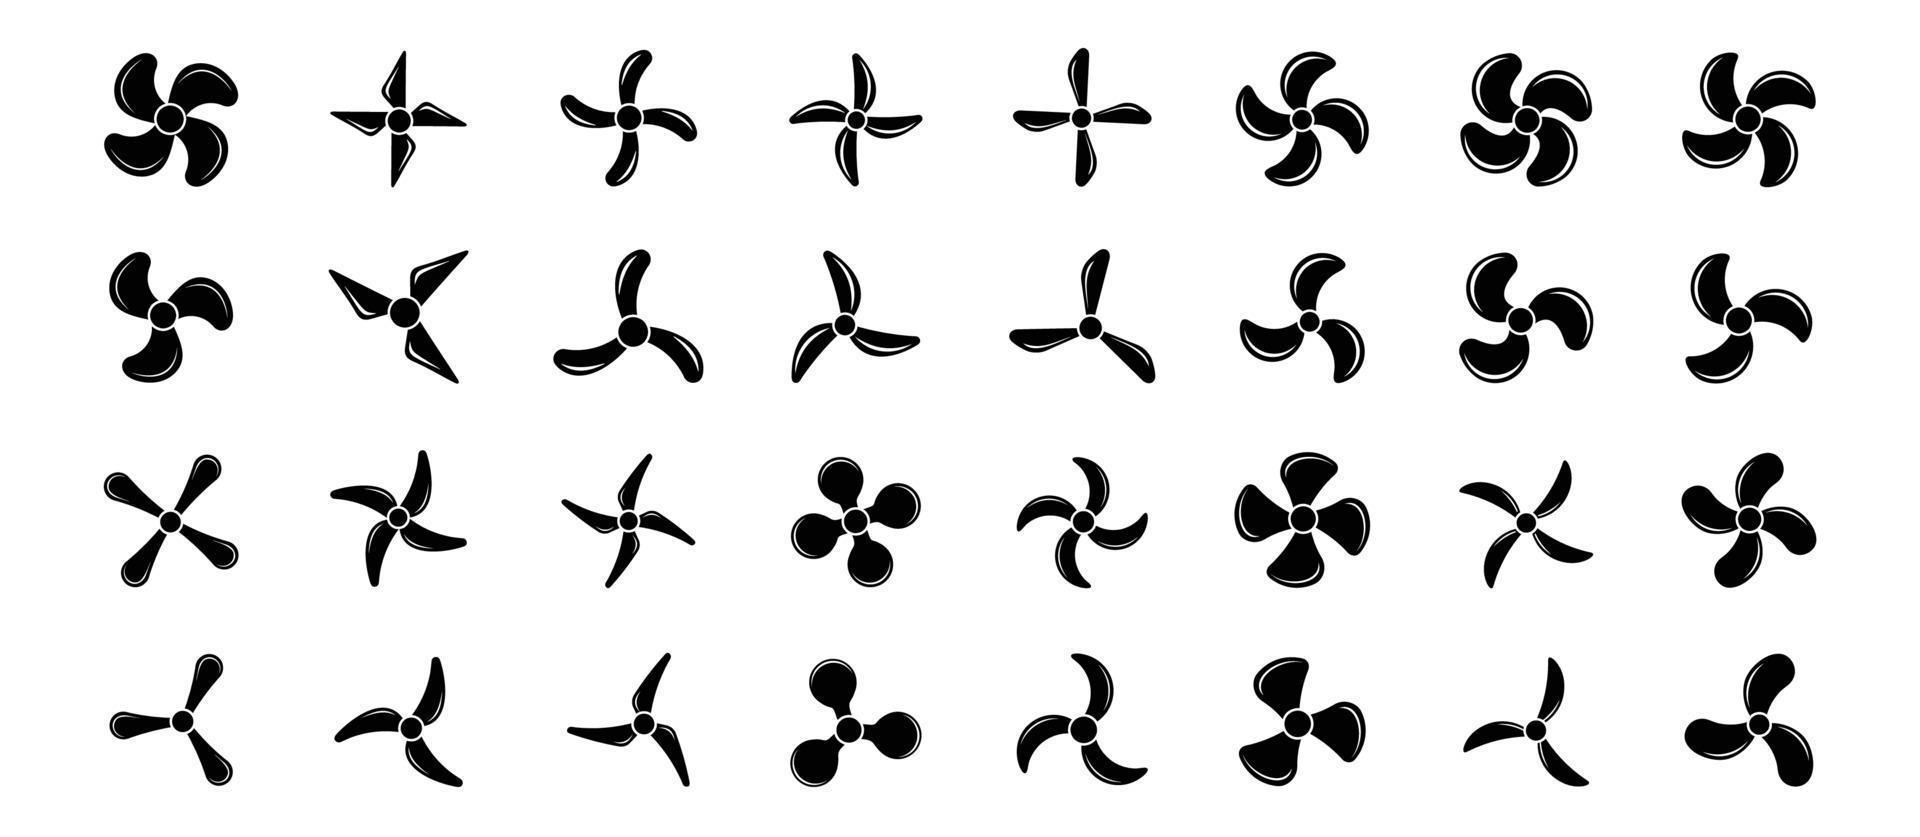 iconos de hélice de avión, símbolos ilustración vectorial giratoria del ventilador. conjunto de iconos de hélice vector